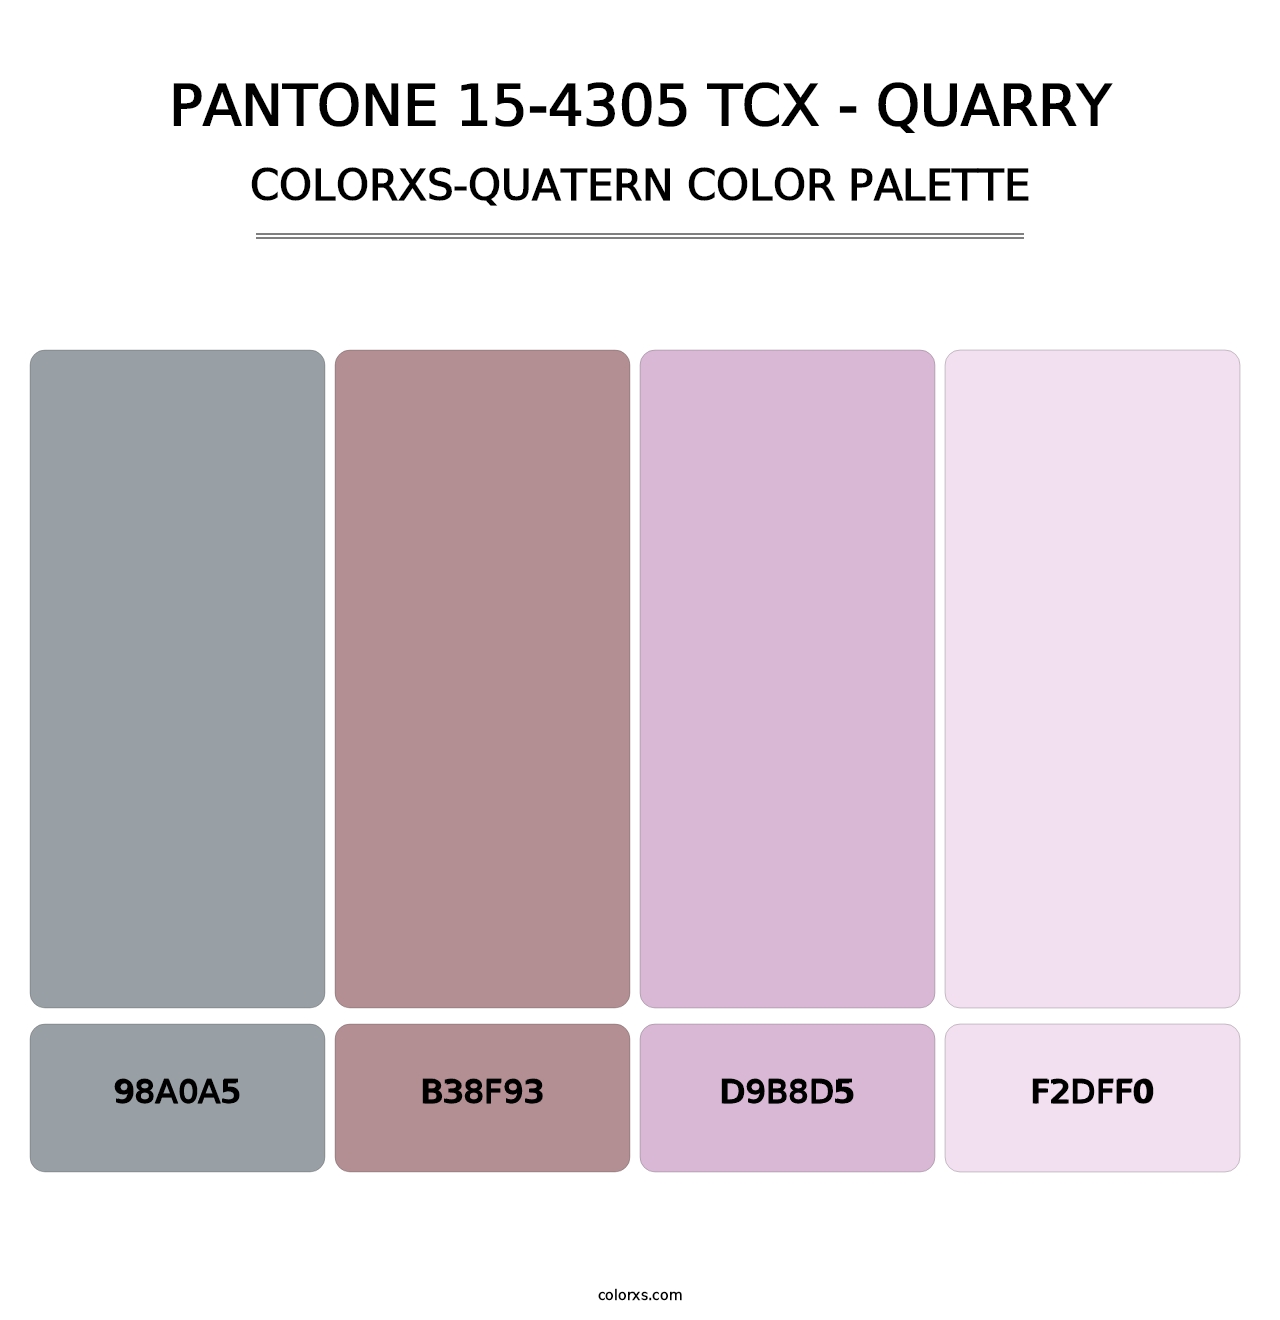 PANTONE 15-4305 TCX - Quarry - Colorxs Quatern Palette